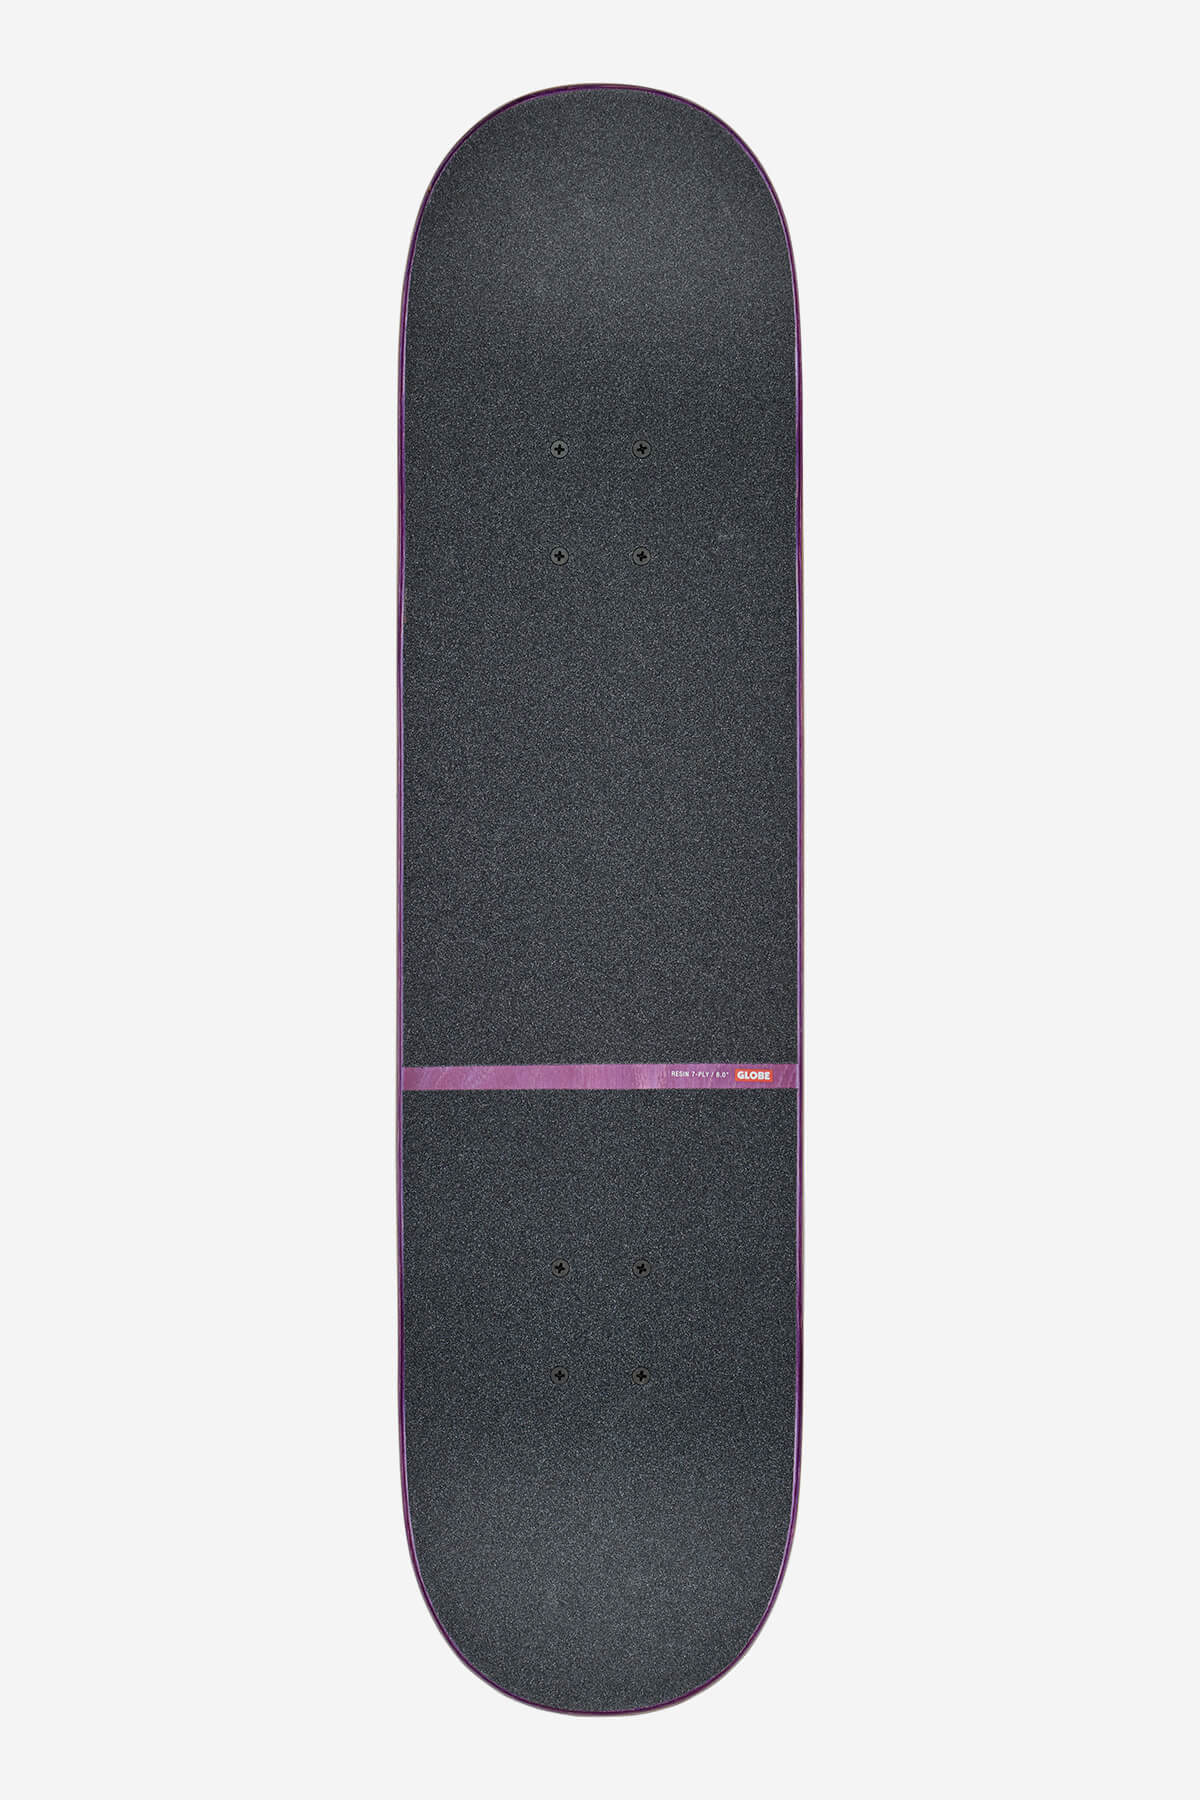 Globe - G1 Orbit - Super Natural - 8,0" Compleet Skateboard